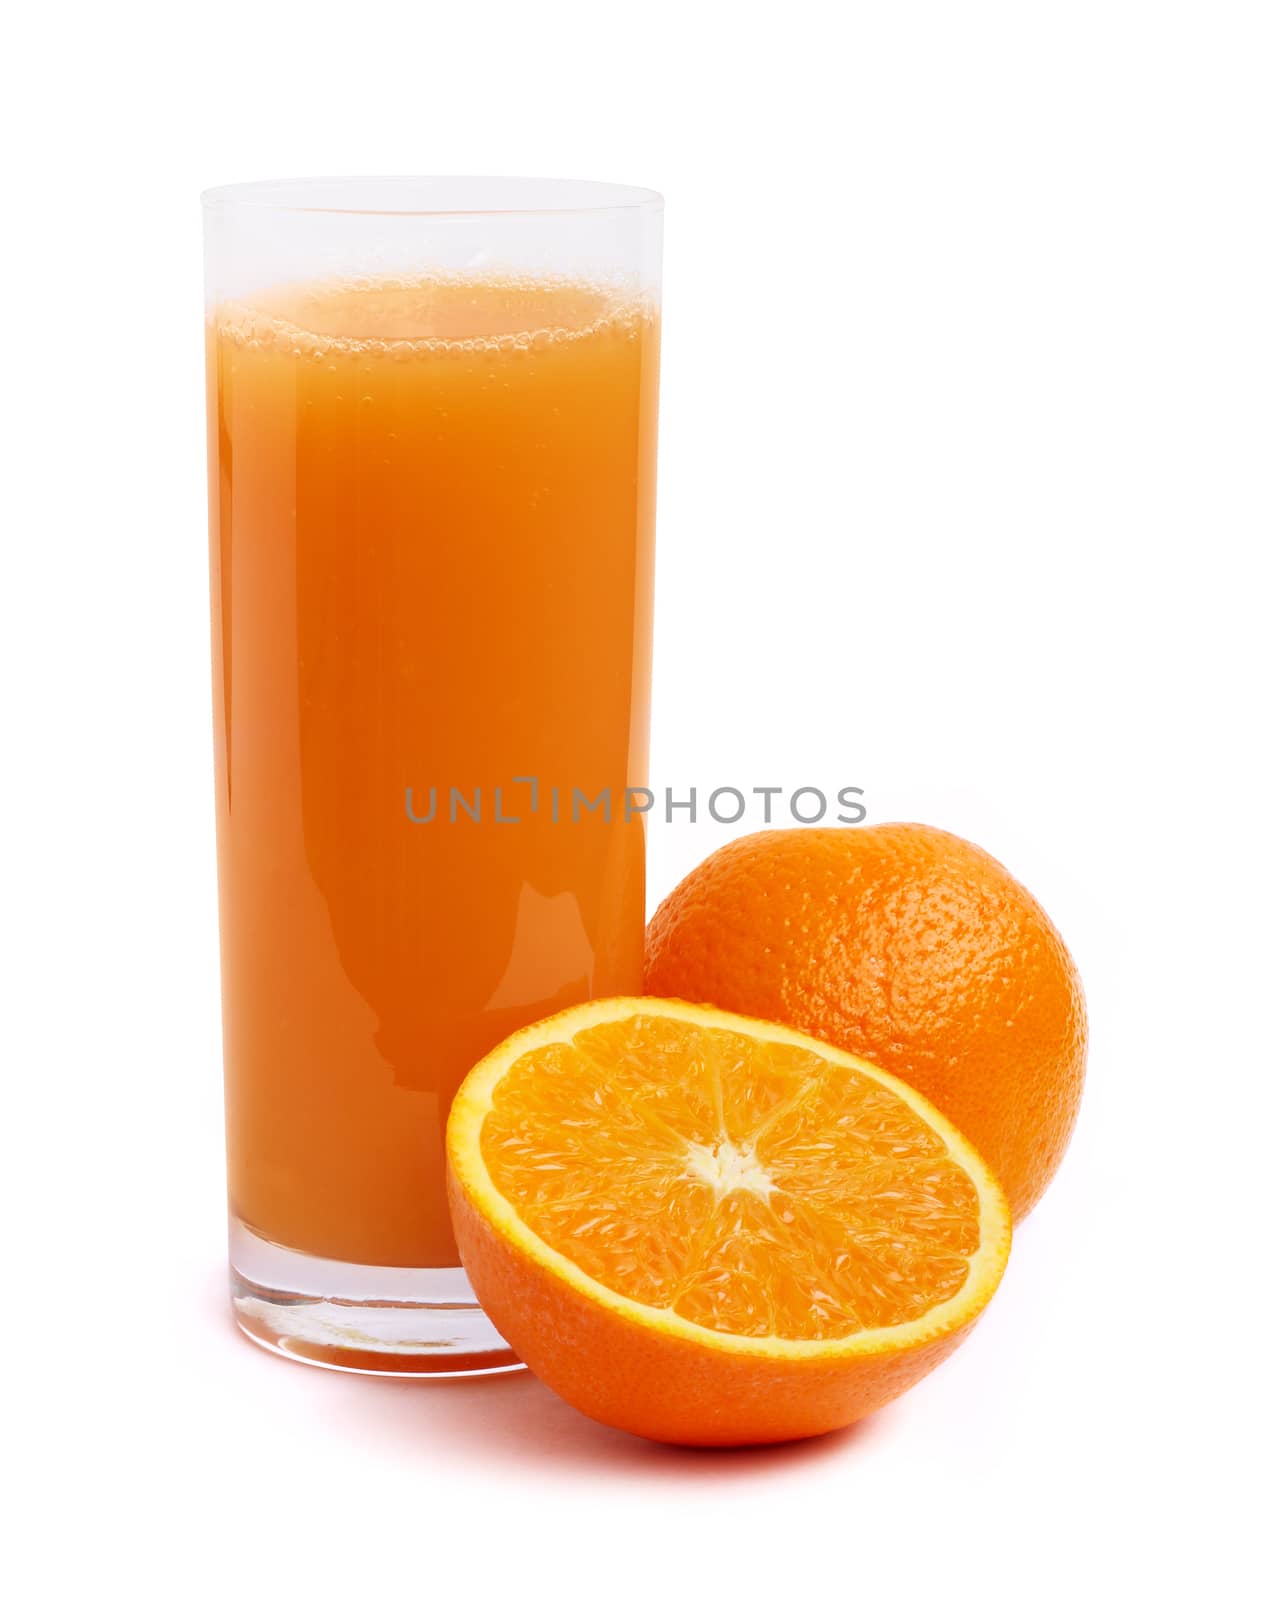 Orane juice and oranges by destillat